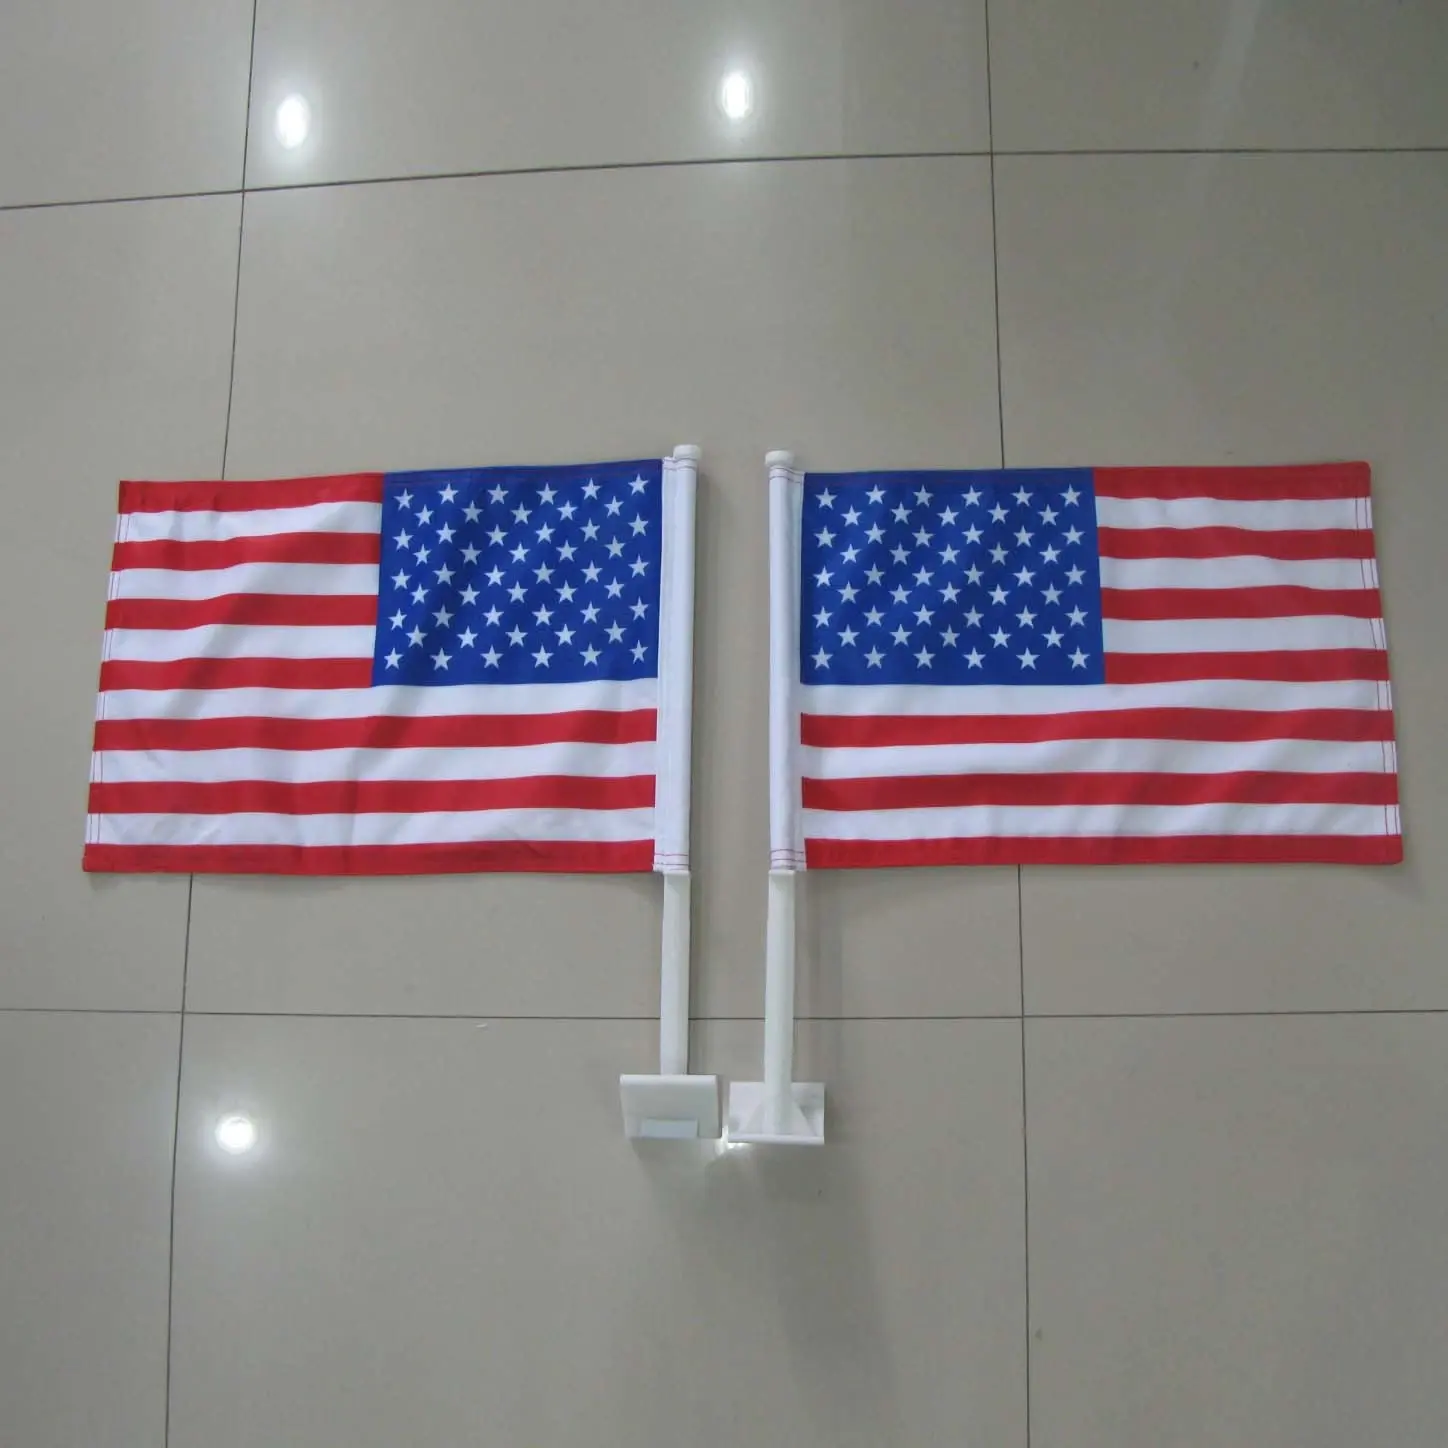 JARMOO dekorasyon özel baskı 12x18 inç dayanıklı çift taraflı güçlü kutup amerikan afişler abd araba bayrakları seçim bayrağı